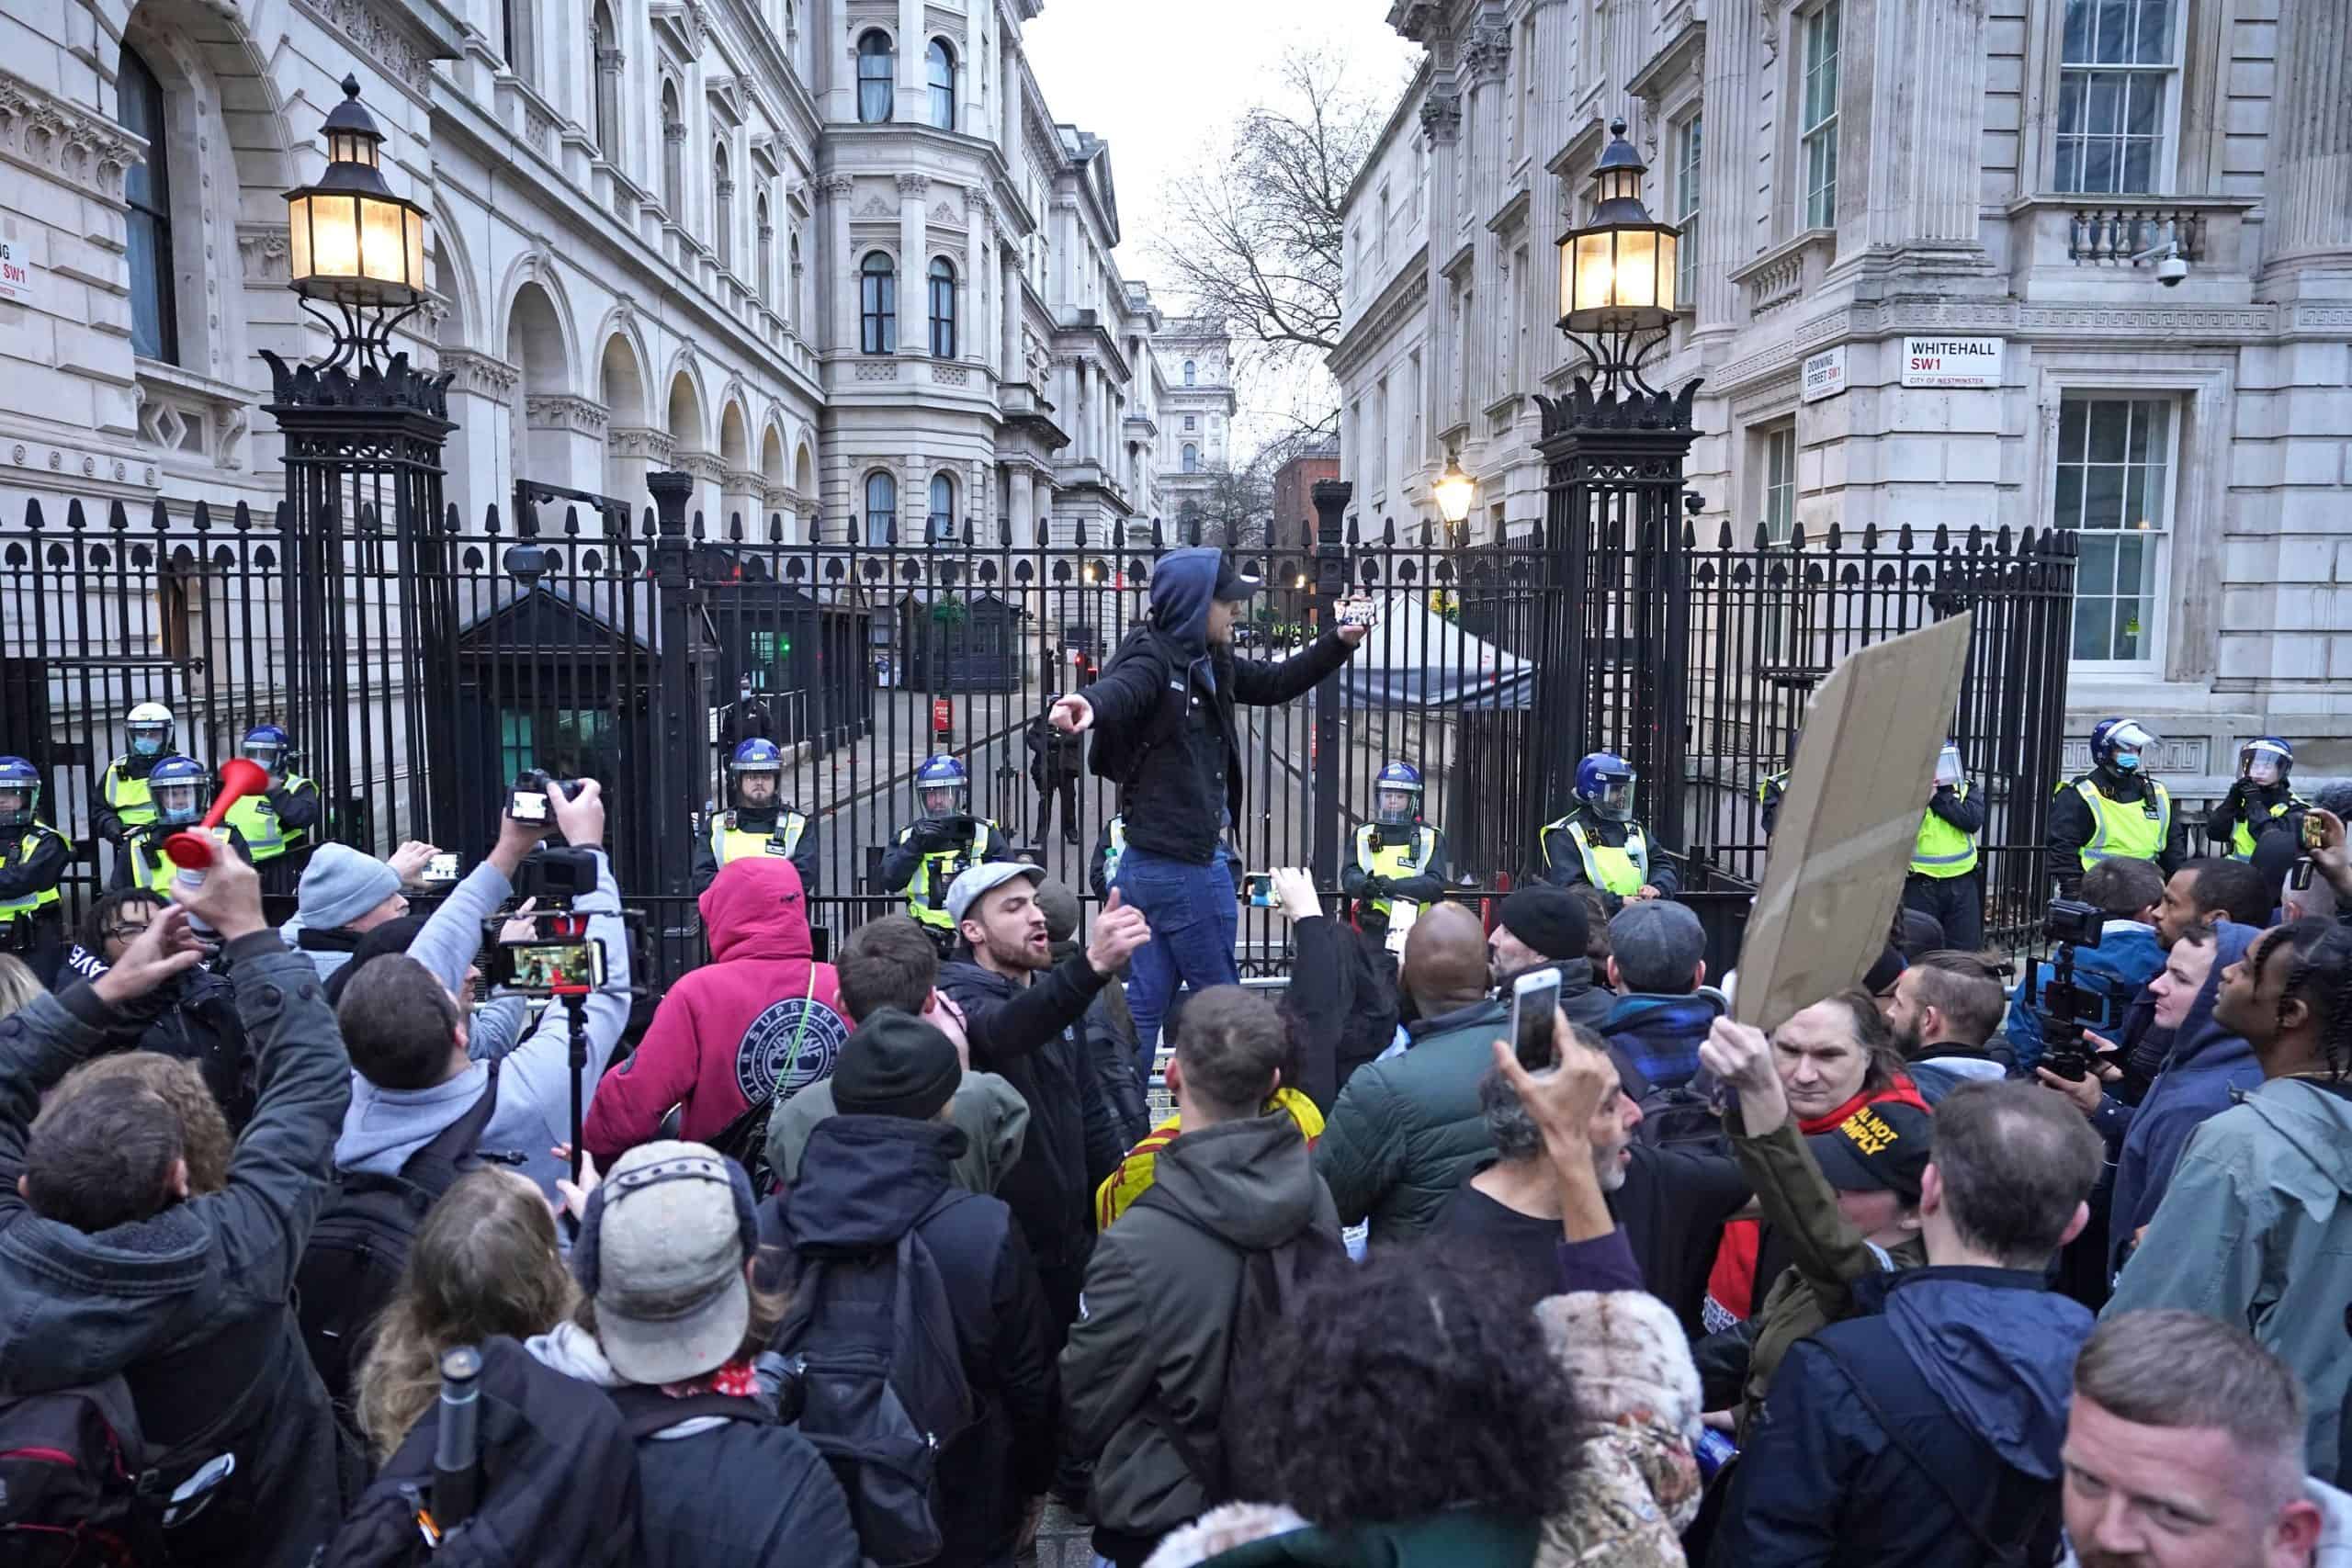 Watch: Violent scenes as lockdown protestors clash with police